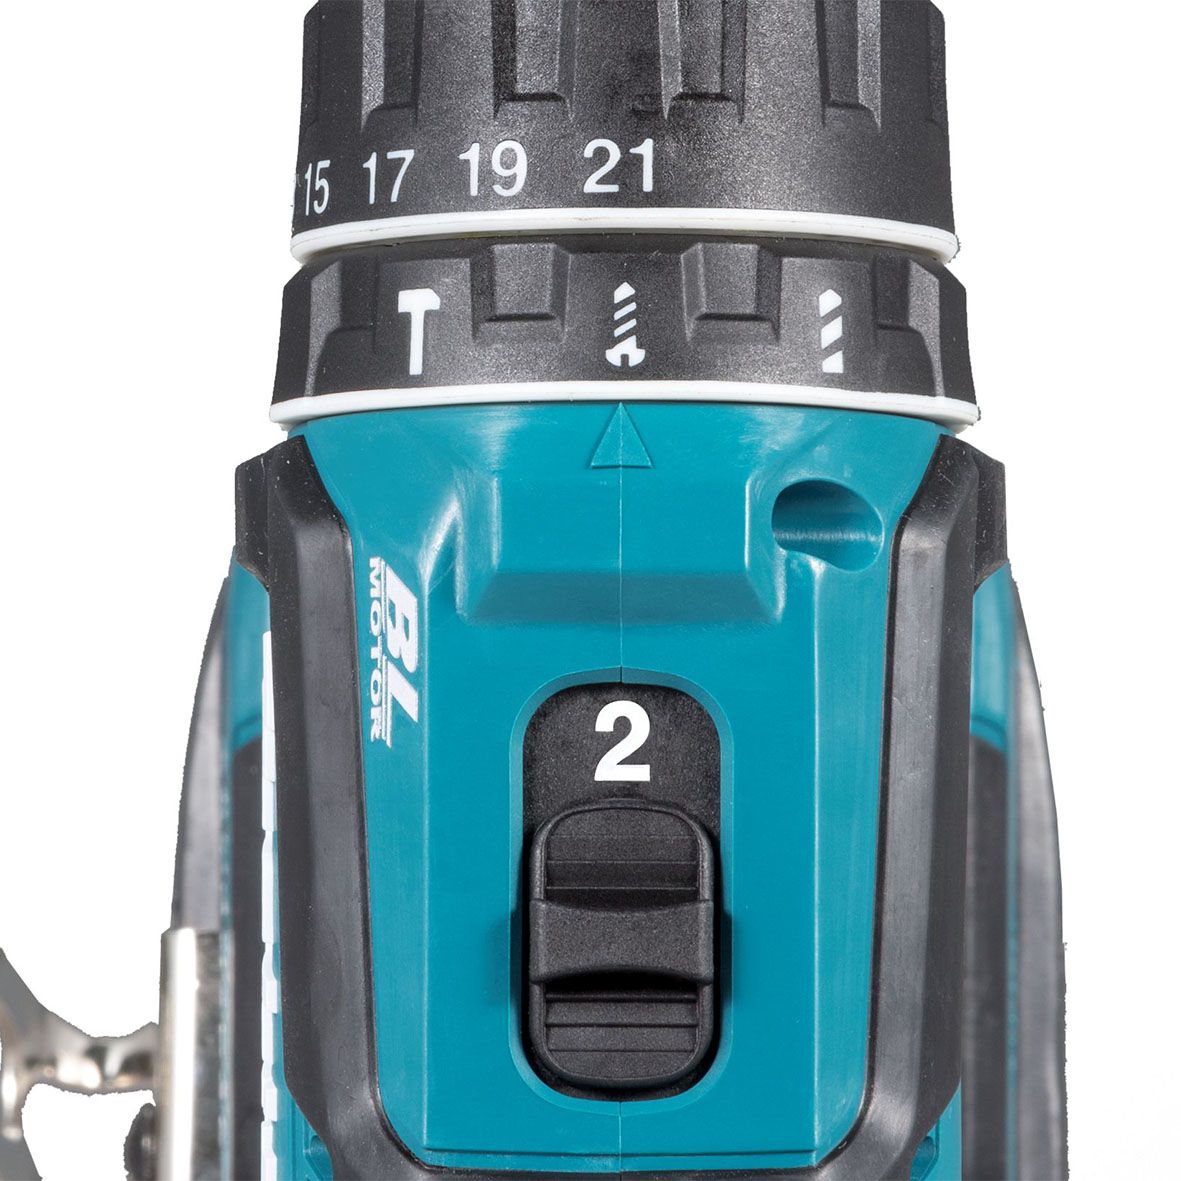 Makita DHP485Z drill Keyless 1.1 kg Black, Blue_3